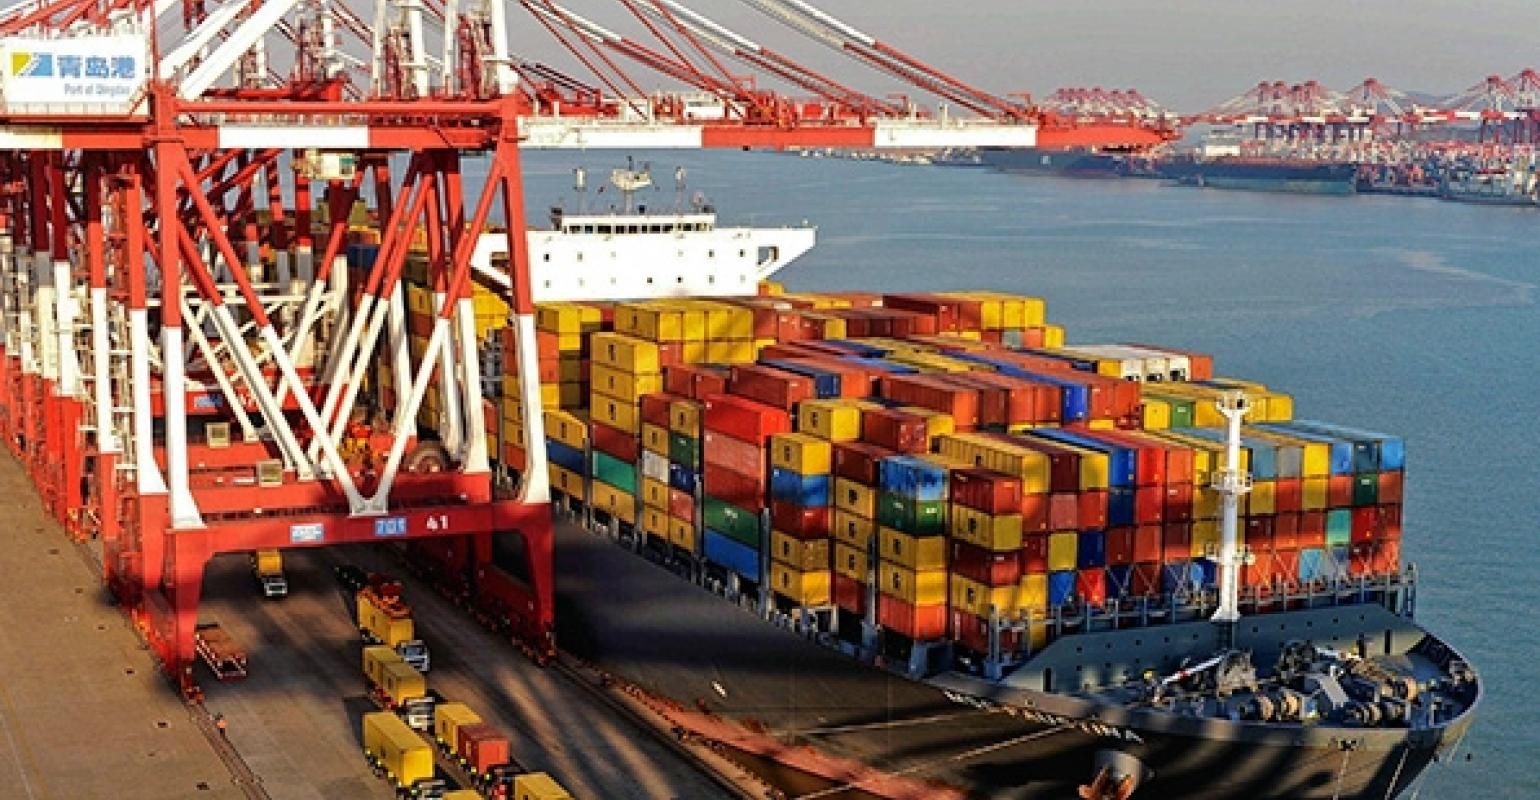 Theo dõi một số mặt hàng của Việt Nam xuất khẩu sang Liên minh kinh tế Á - Âu (Eurasian Economic Union-EAEU) có nguy cơ bị tăng thuế nhập khẩu lên mức MFN do EAEU áp dụng cơ chế tự vệ ngưỡng (số liệu cập nhật đến tháng 10/2018)